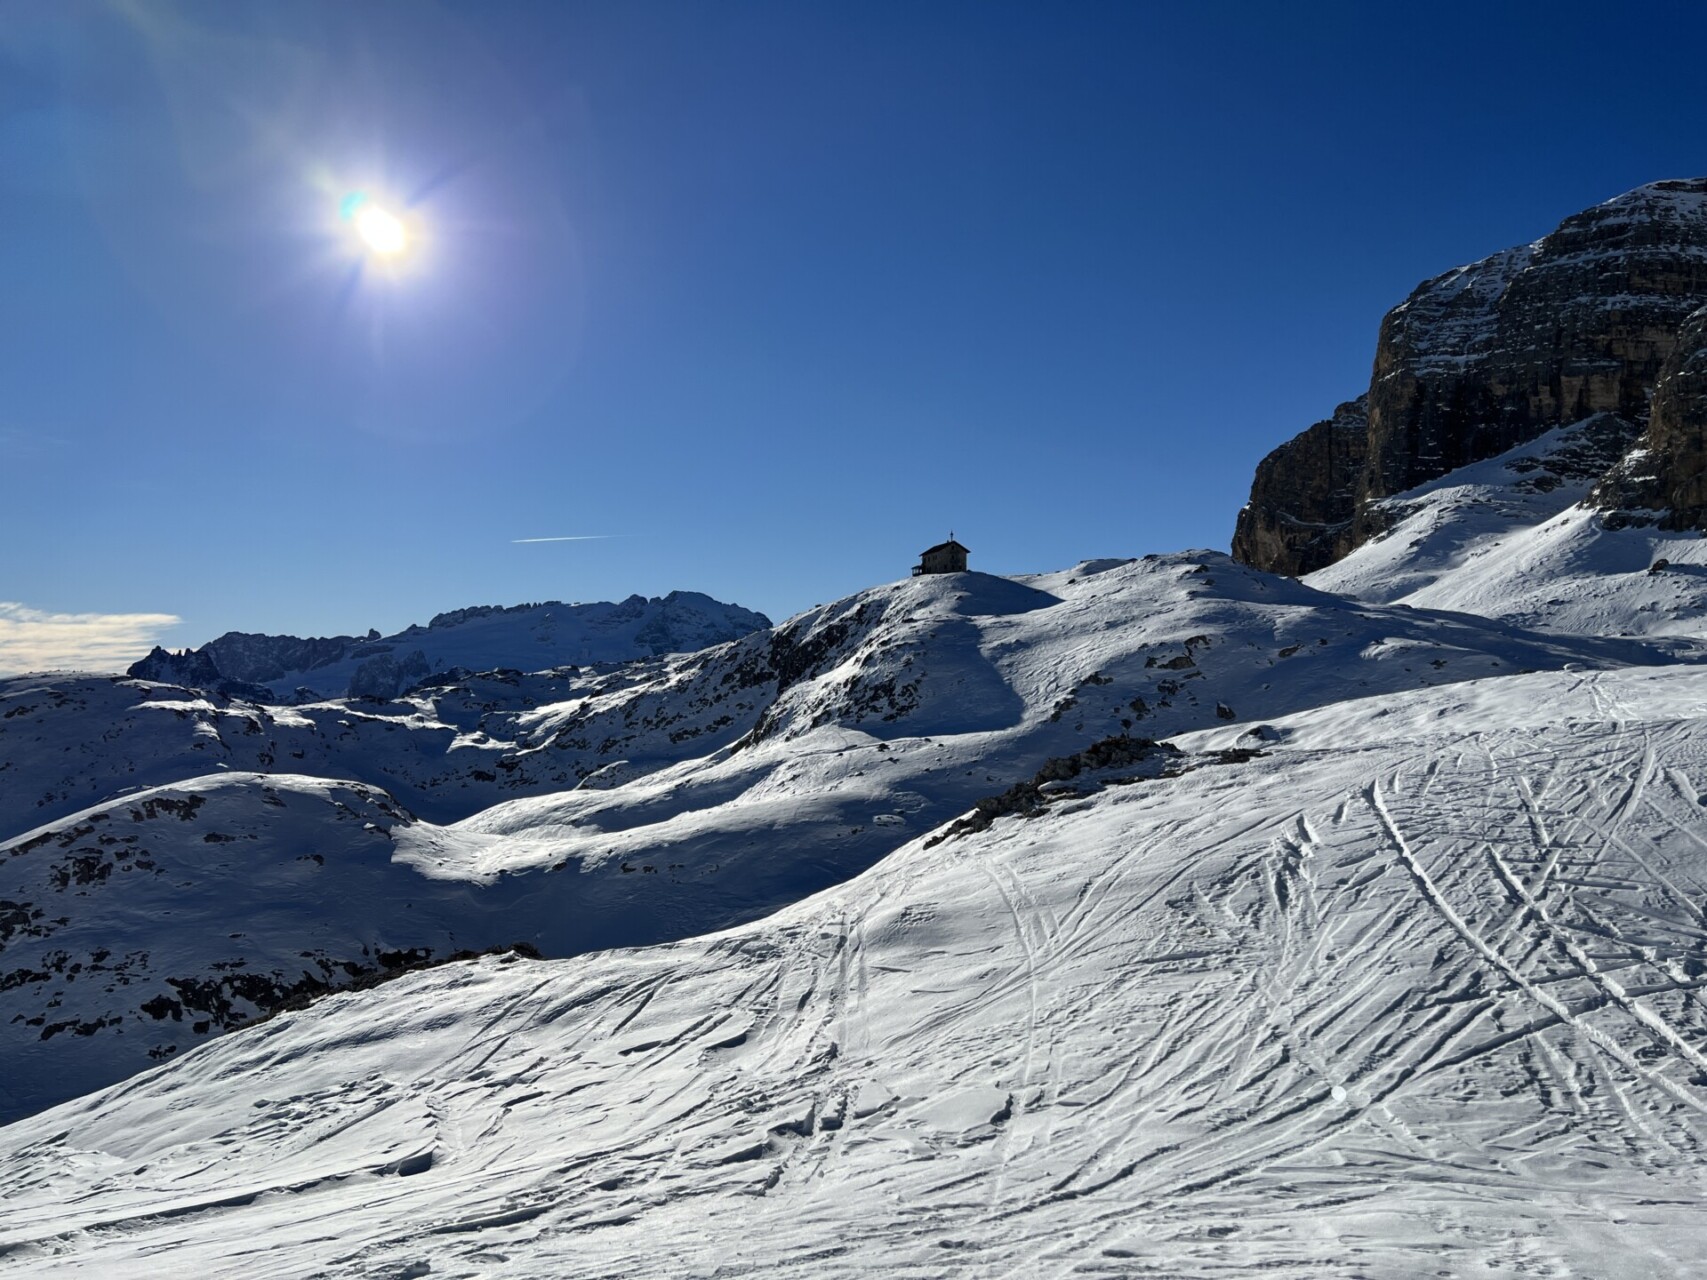 Alpen: storing brengt sneeuw. Daarna prachtig weer in de carnavalsweek!